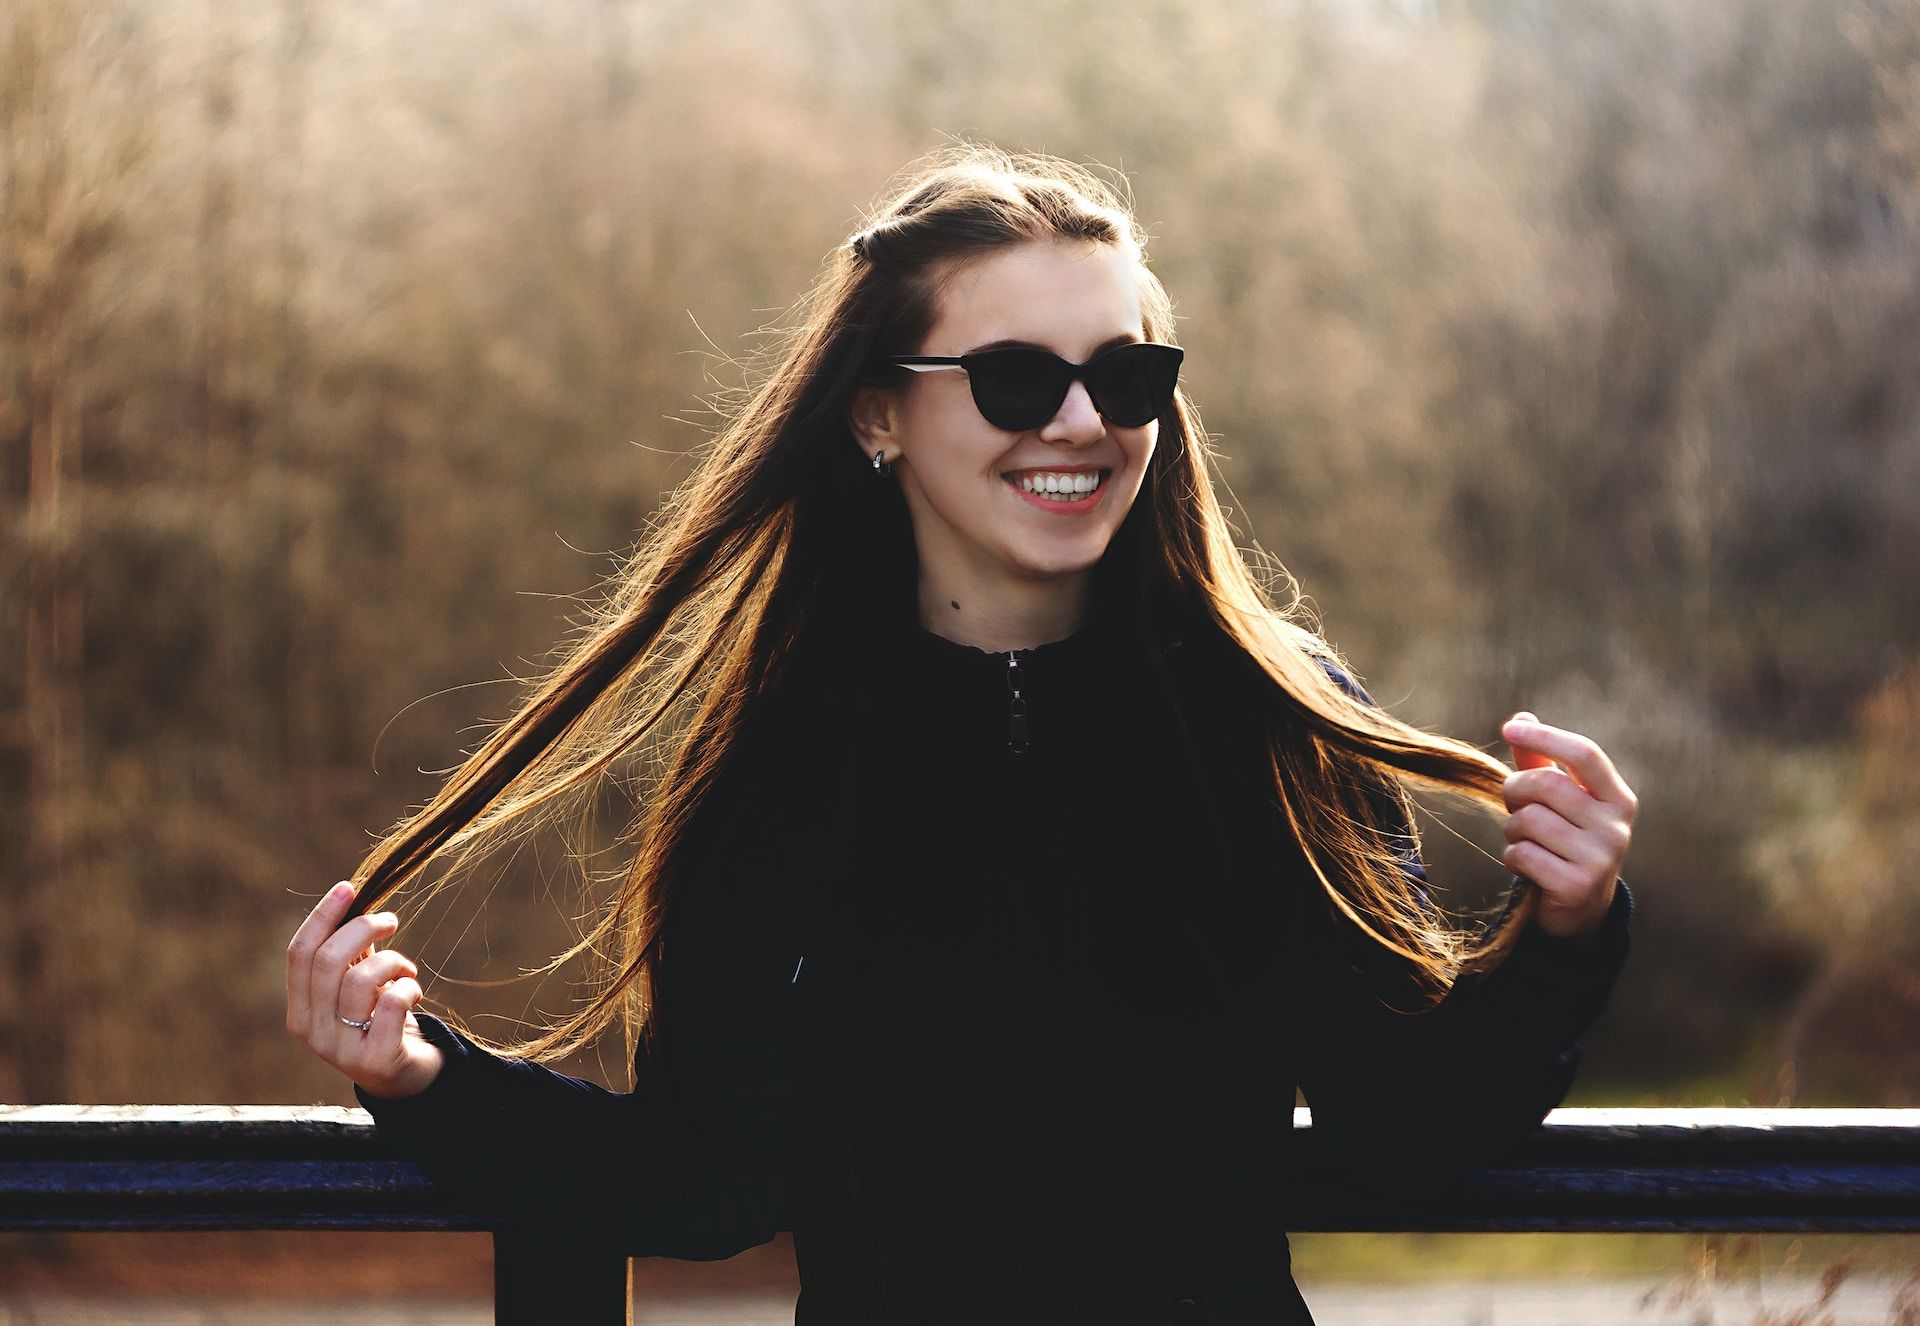 Jeune femme souriante avec des lunettes de soleil sur un balcon, tennat ses cheveux - Photo de Abbat sur https://unsplash.com/fr/photos/WXlEZq8iSyc